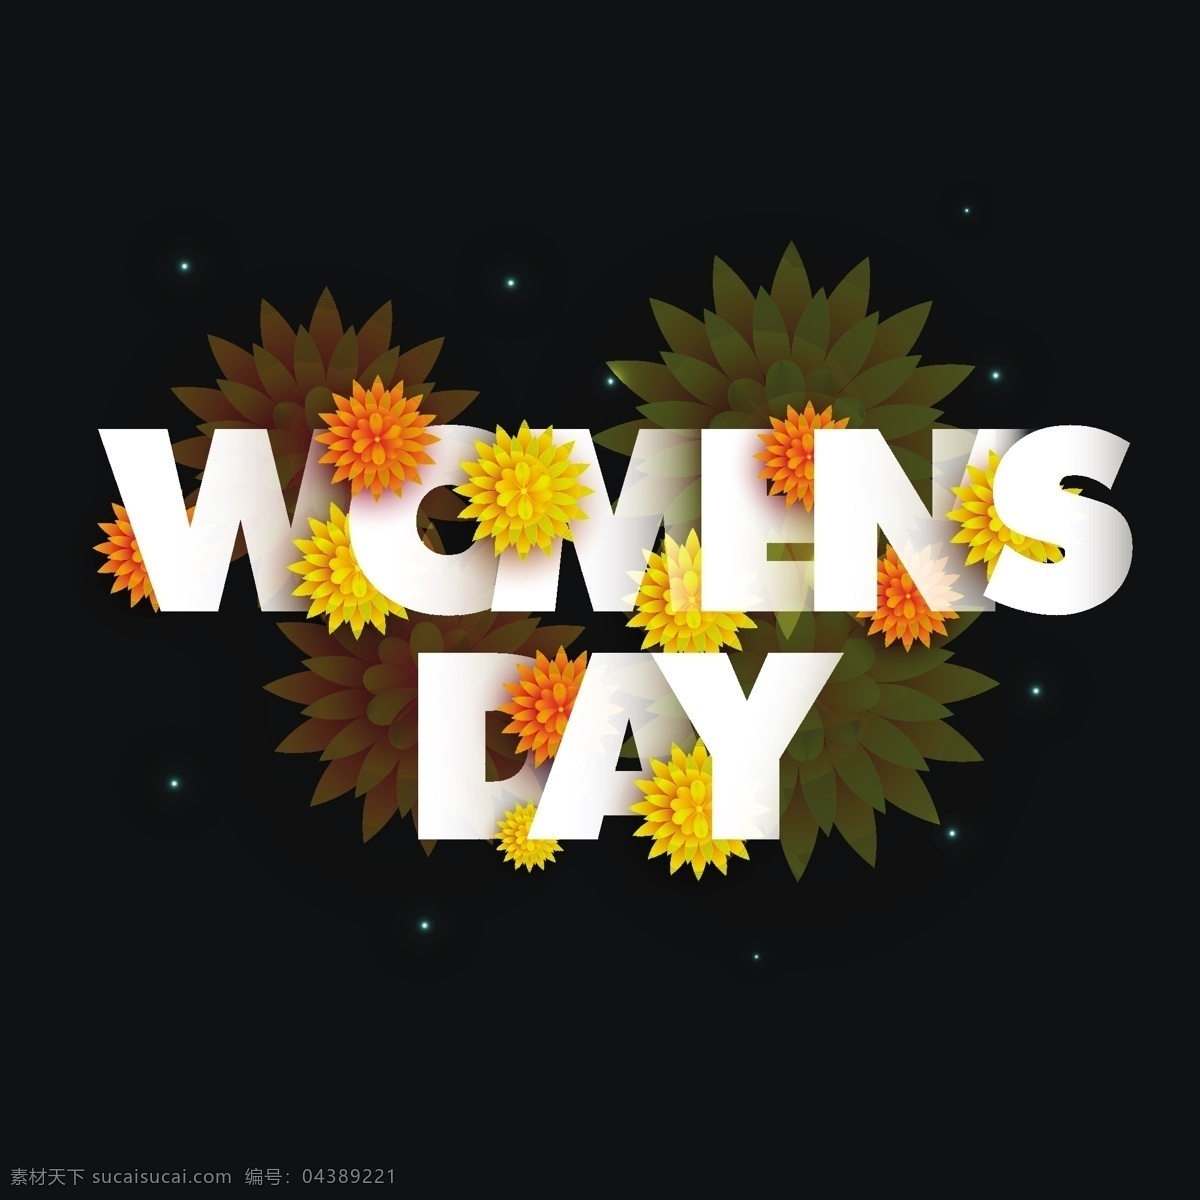 妇女节背景 背景 花卉 花卉背景 壁纸 色彩 庆典 度假 丰富多彩 庆祝 女士 女性 自由 国际 日